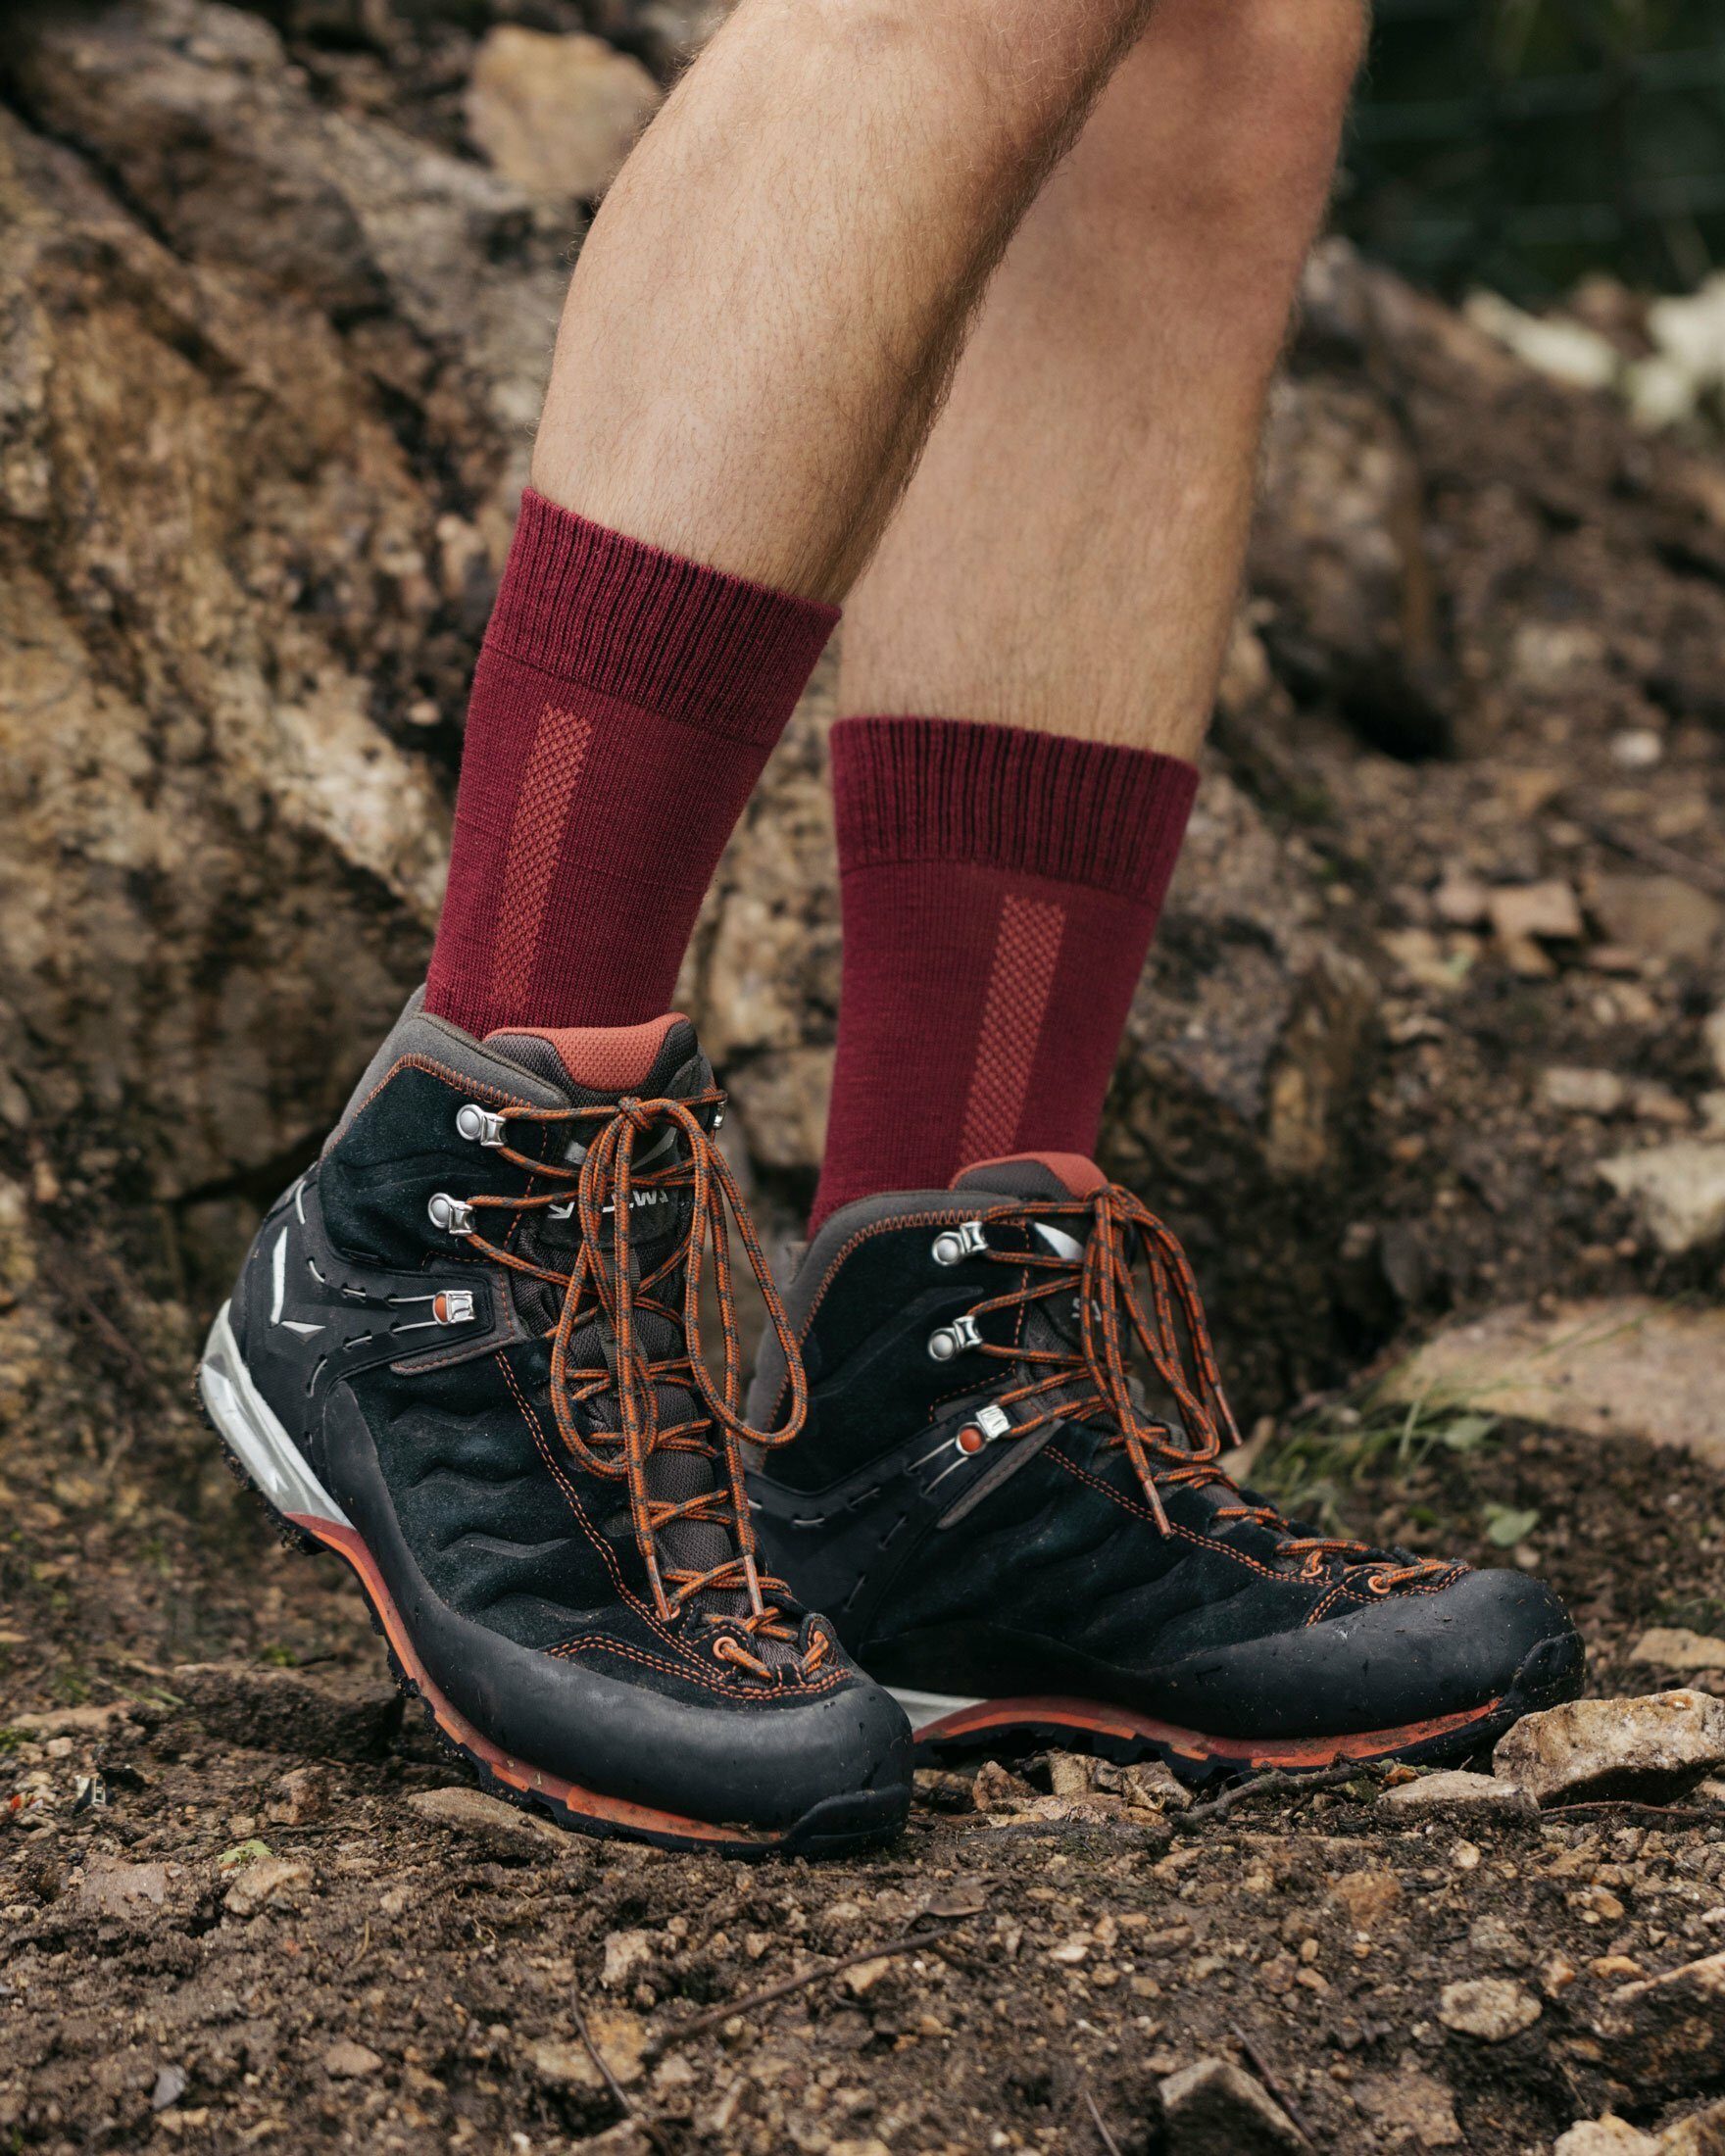 SNOCKS Wandersocken Hiking Socks für garantiert keine (1-Paar) Schweißfüße mit Merinowolle, Damen 04 & Grau Herren